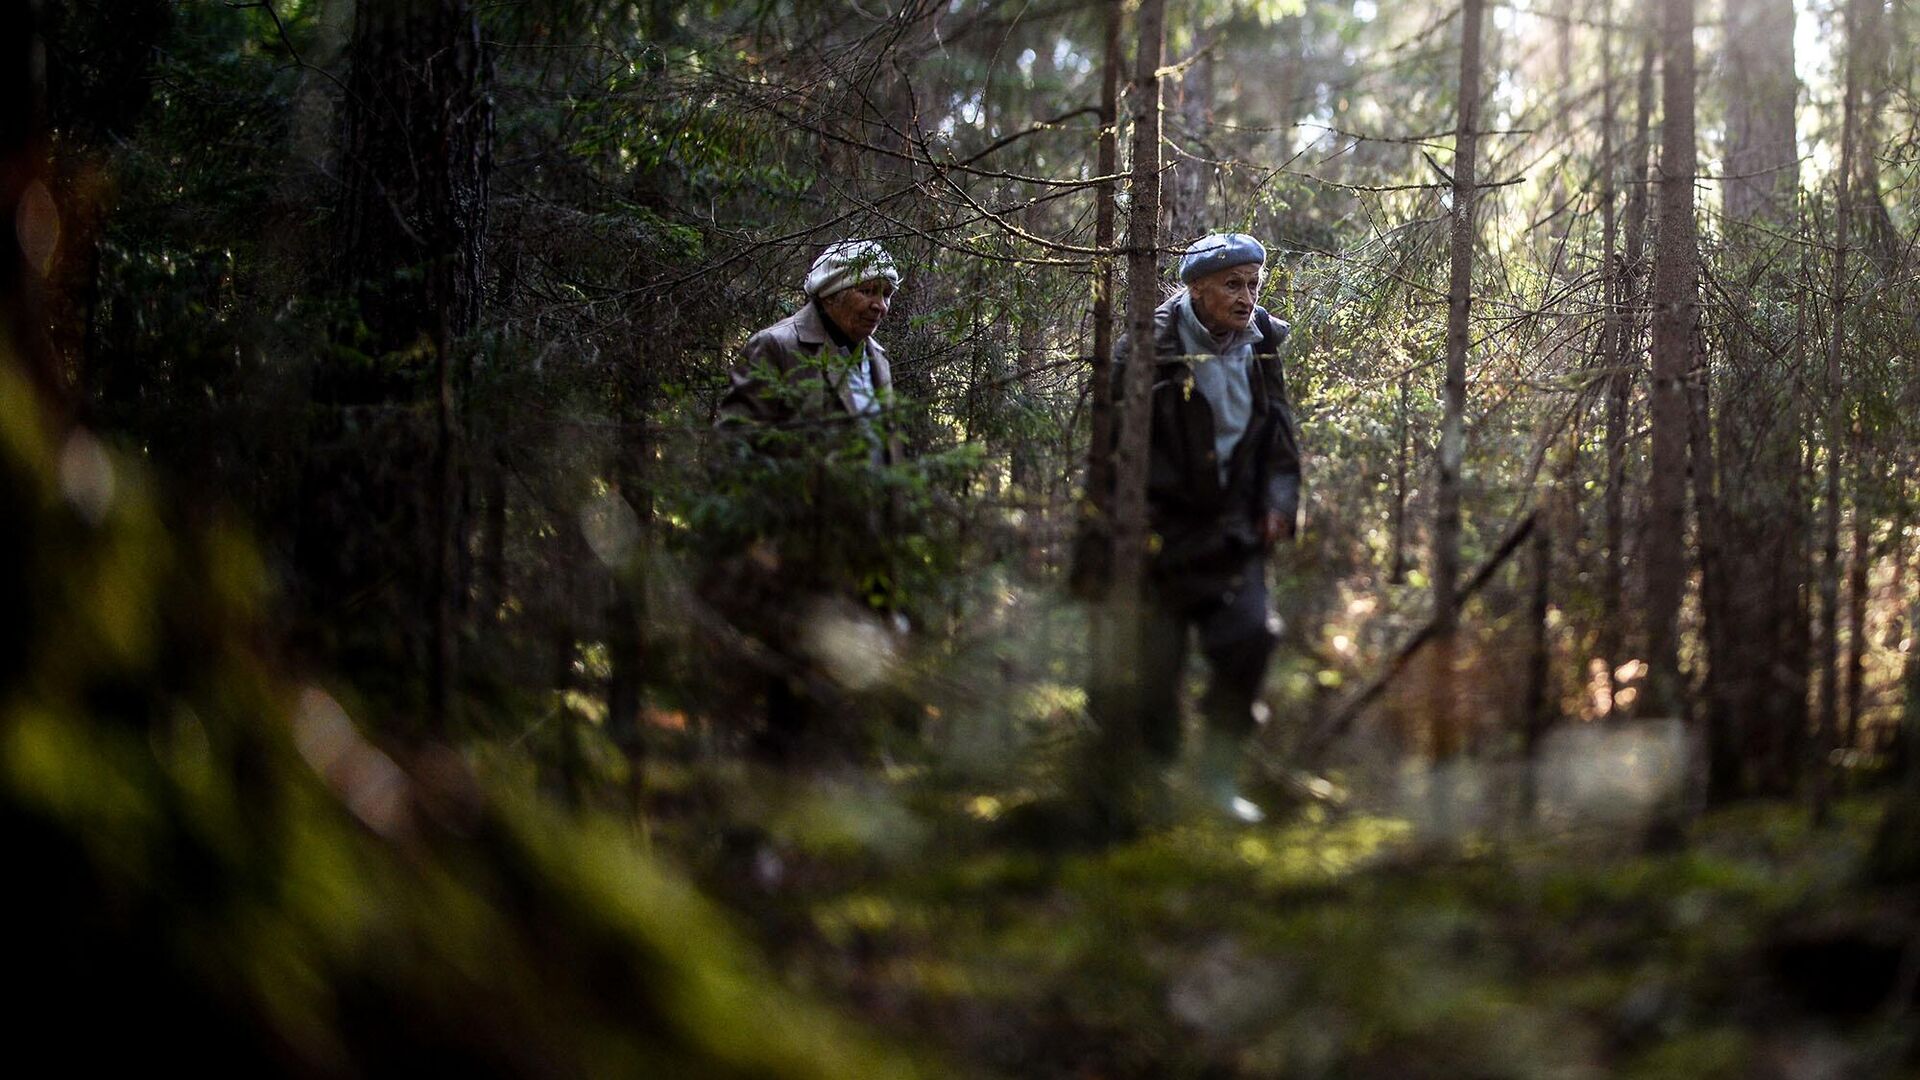 Можно ли посещать леса. Человек потерялся в лесу. Шары в лесу в Тверской области. Лес действующие лица фото. Фото заснятые в лесу с Виктором Королевым.